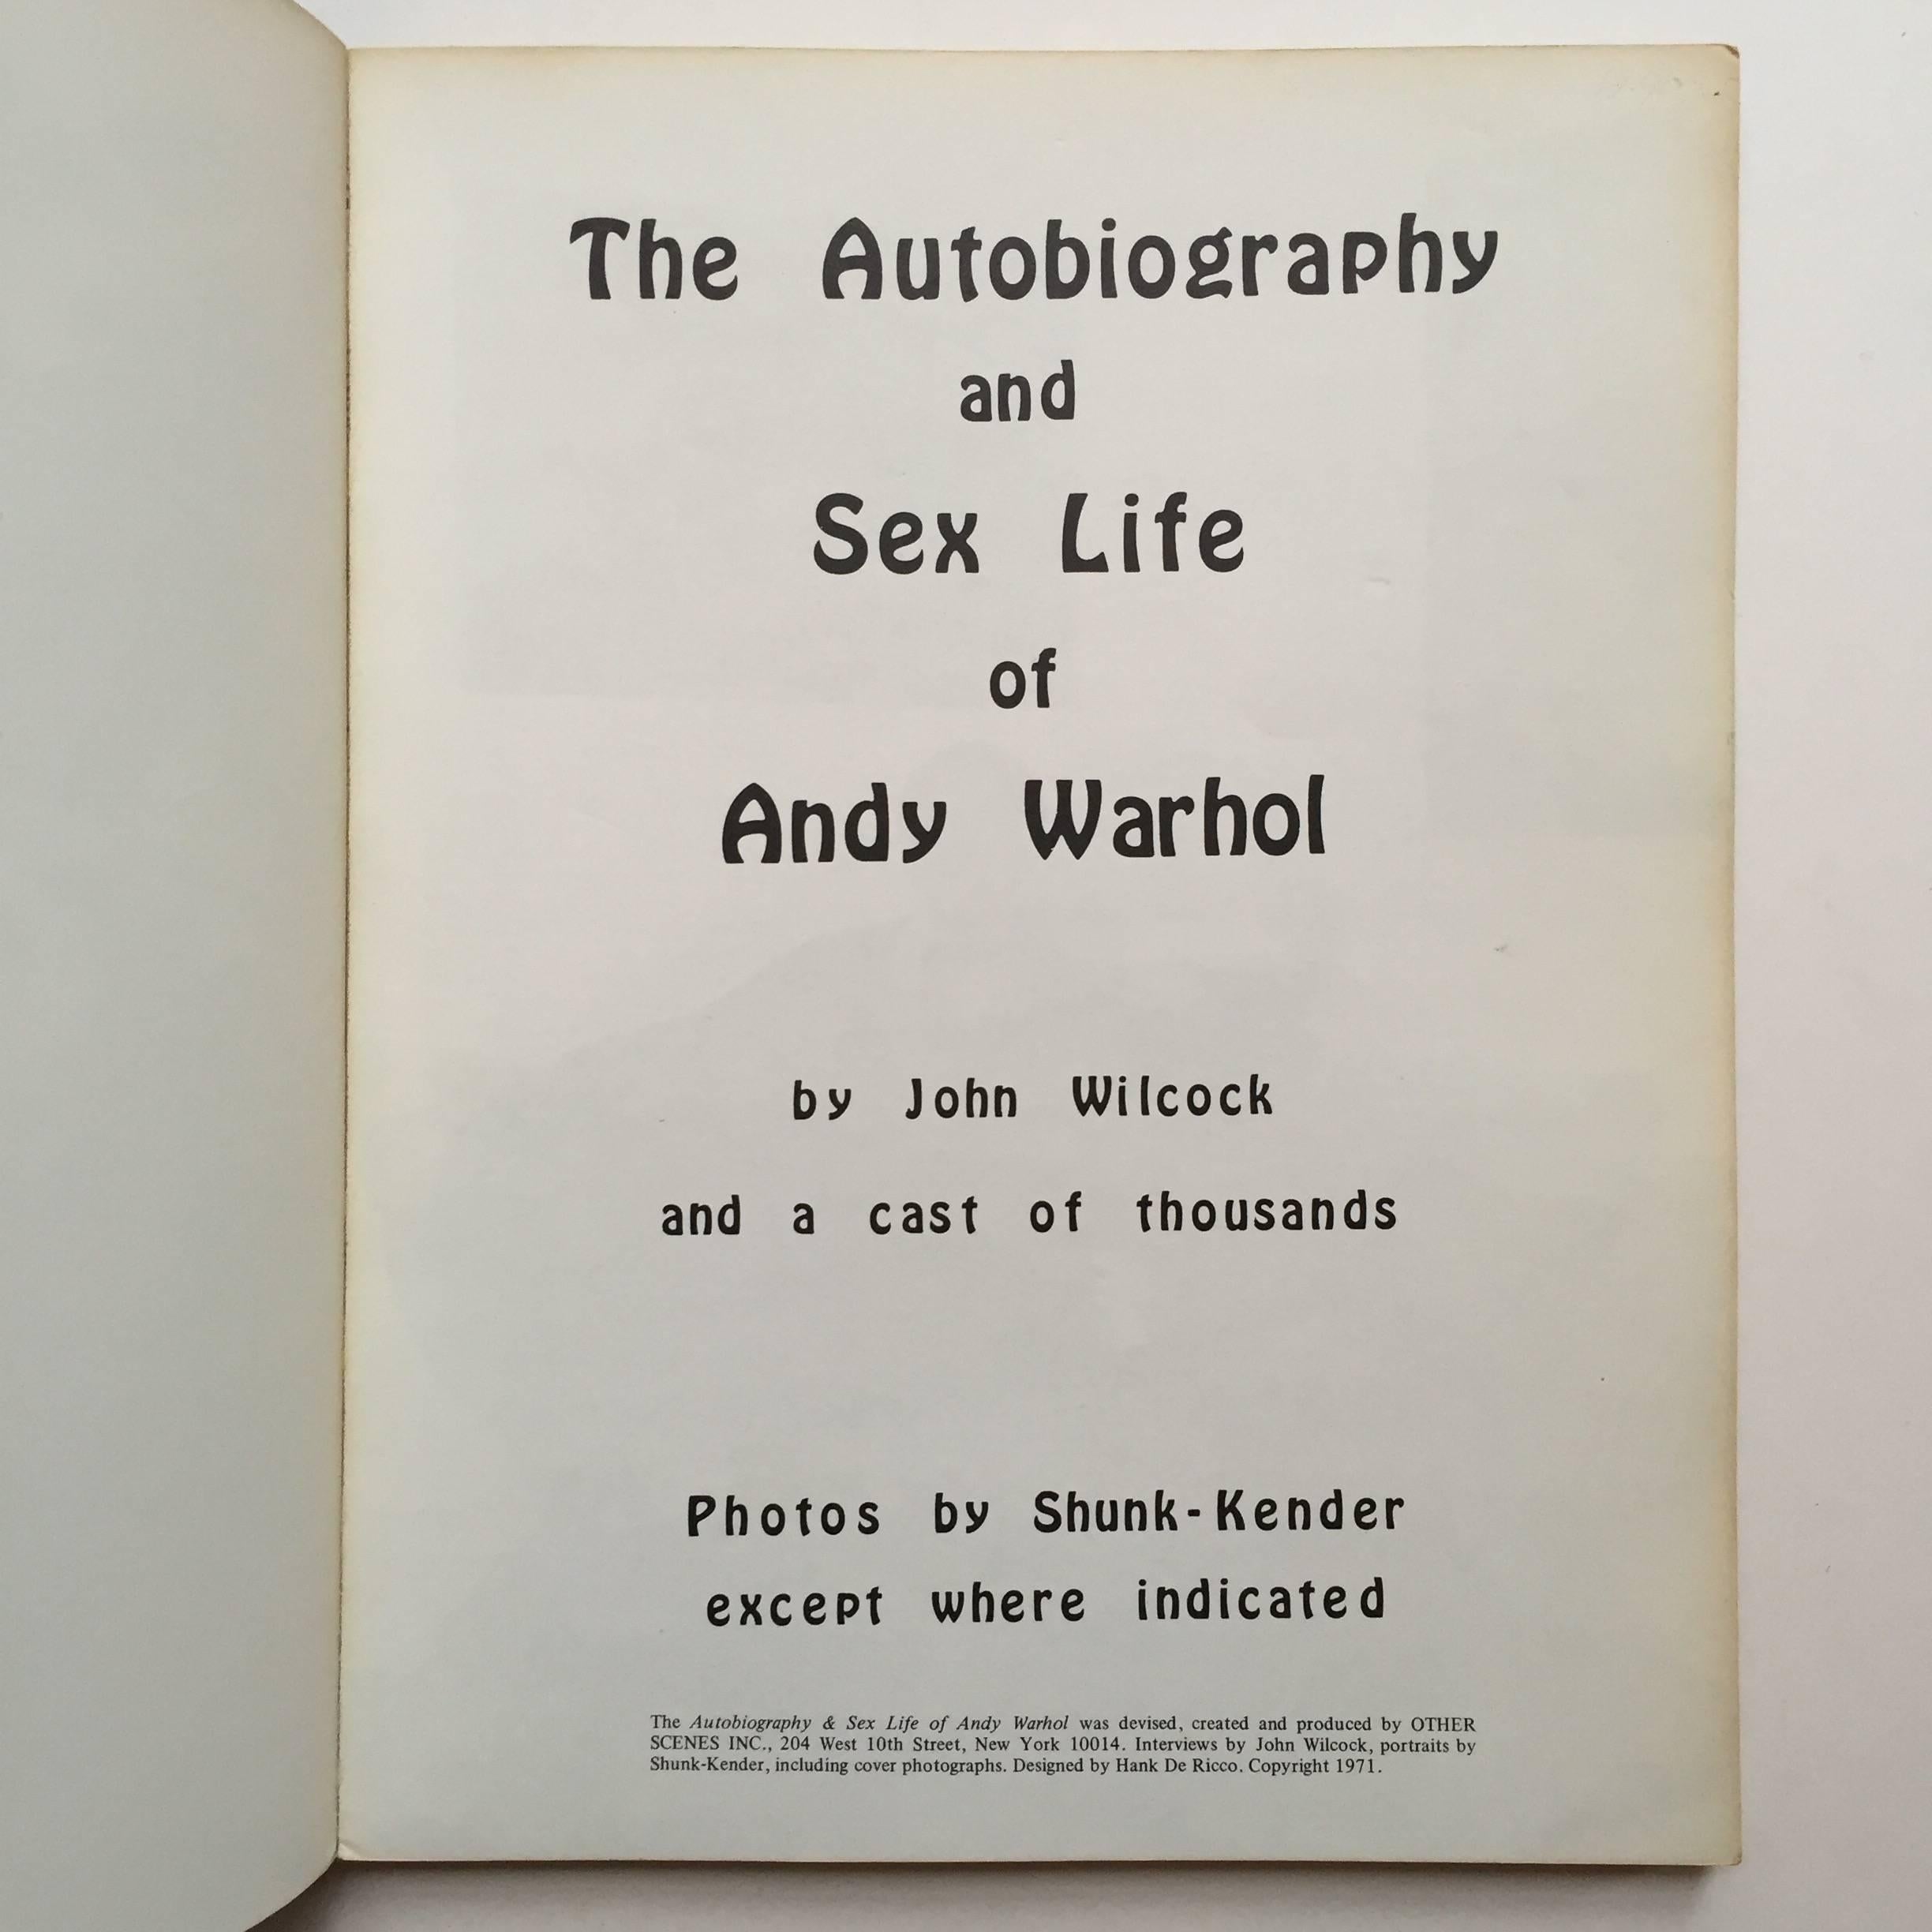 Première édition, publiée par Other Scenes Inc, 1971

Après avoir passé six mois à la Factory, l'écrivain britannique John Wilcock s'est entretenu avec de nombreux personnages clés de la vie de Warhol, dont Naomi Levine, Ultra Violet, Sam Green,